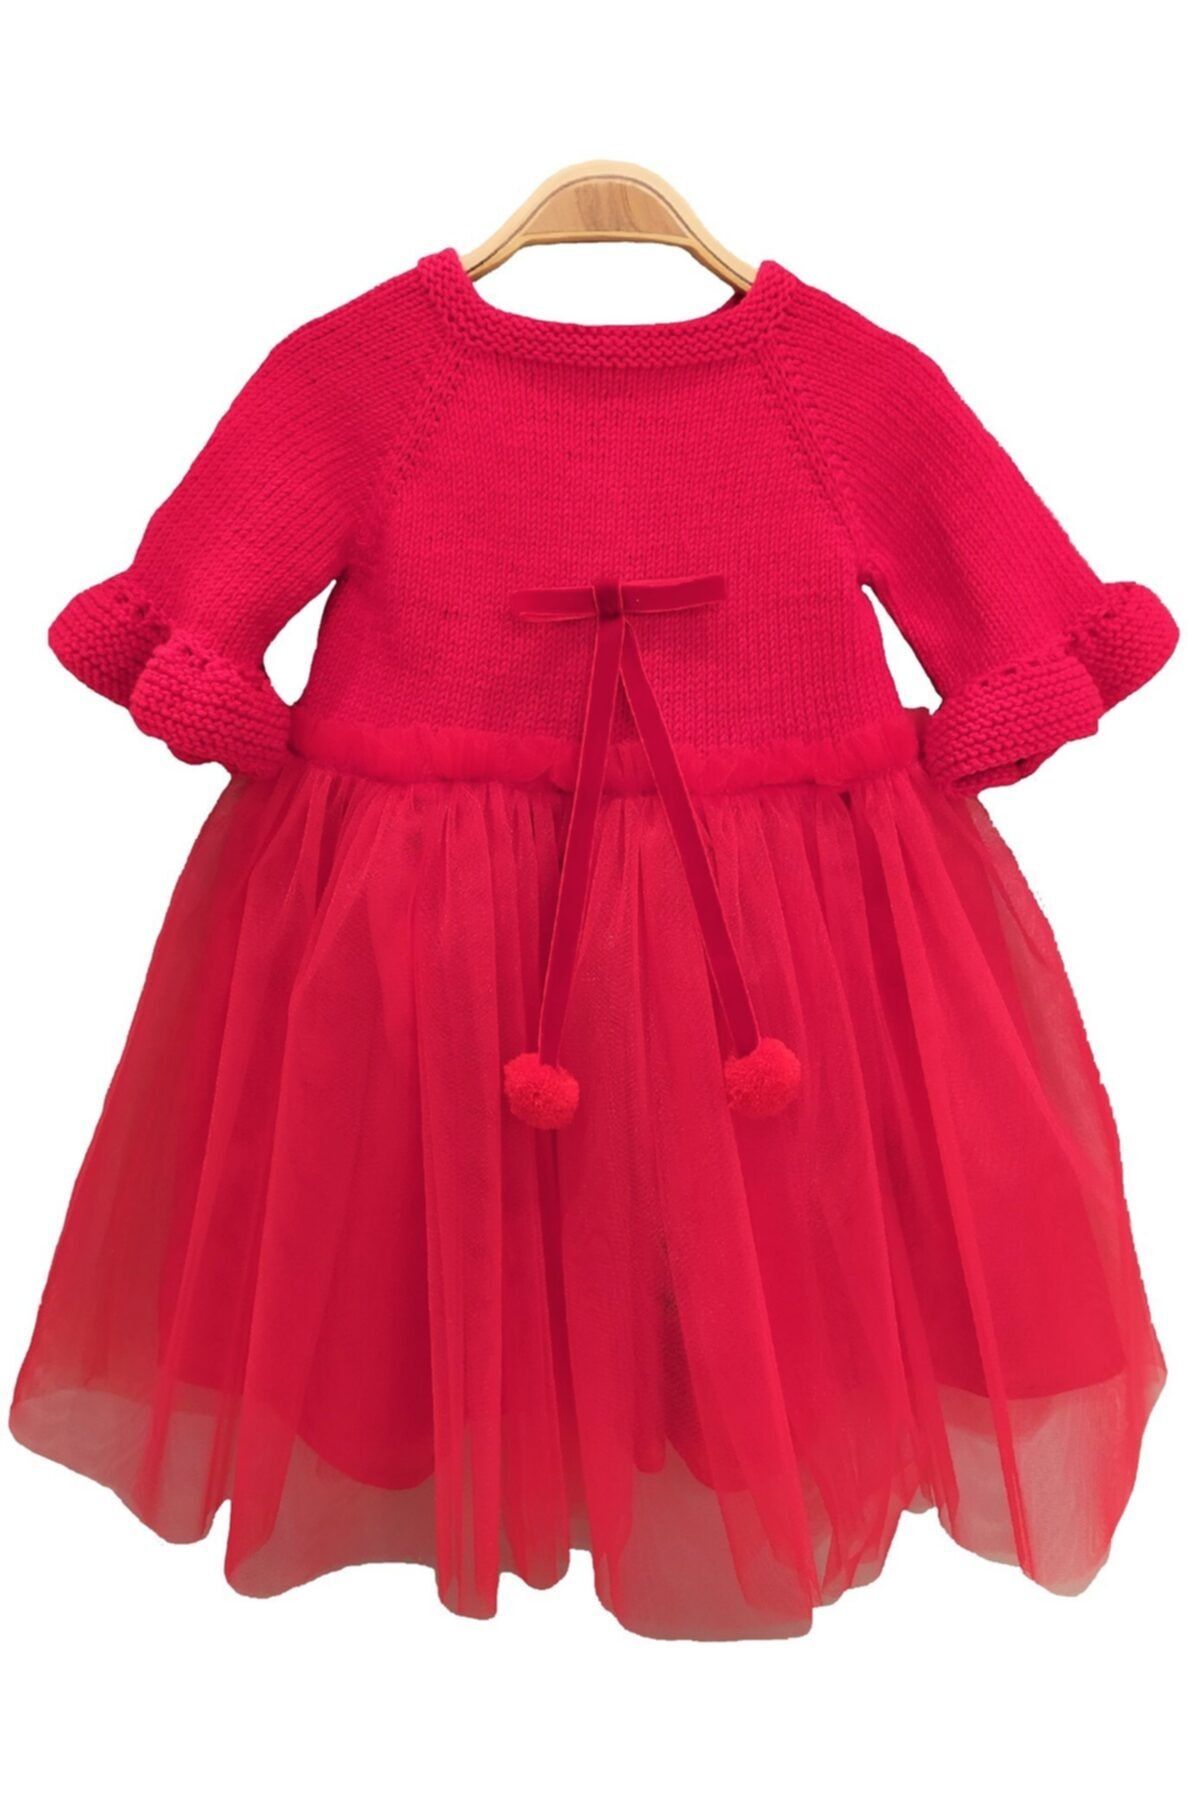 Pacco Baby Kız Bebek Kırmızı El Örgüsü Organik Pamuk Tütü Elbise